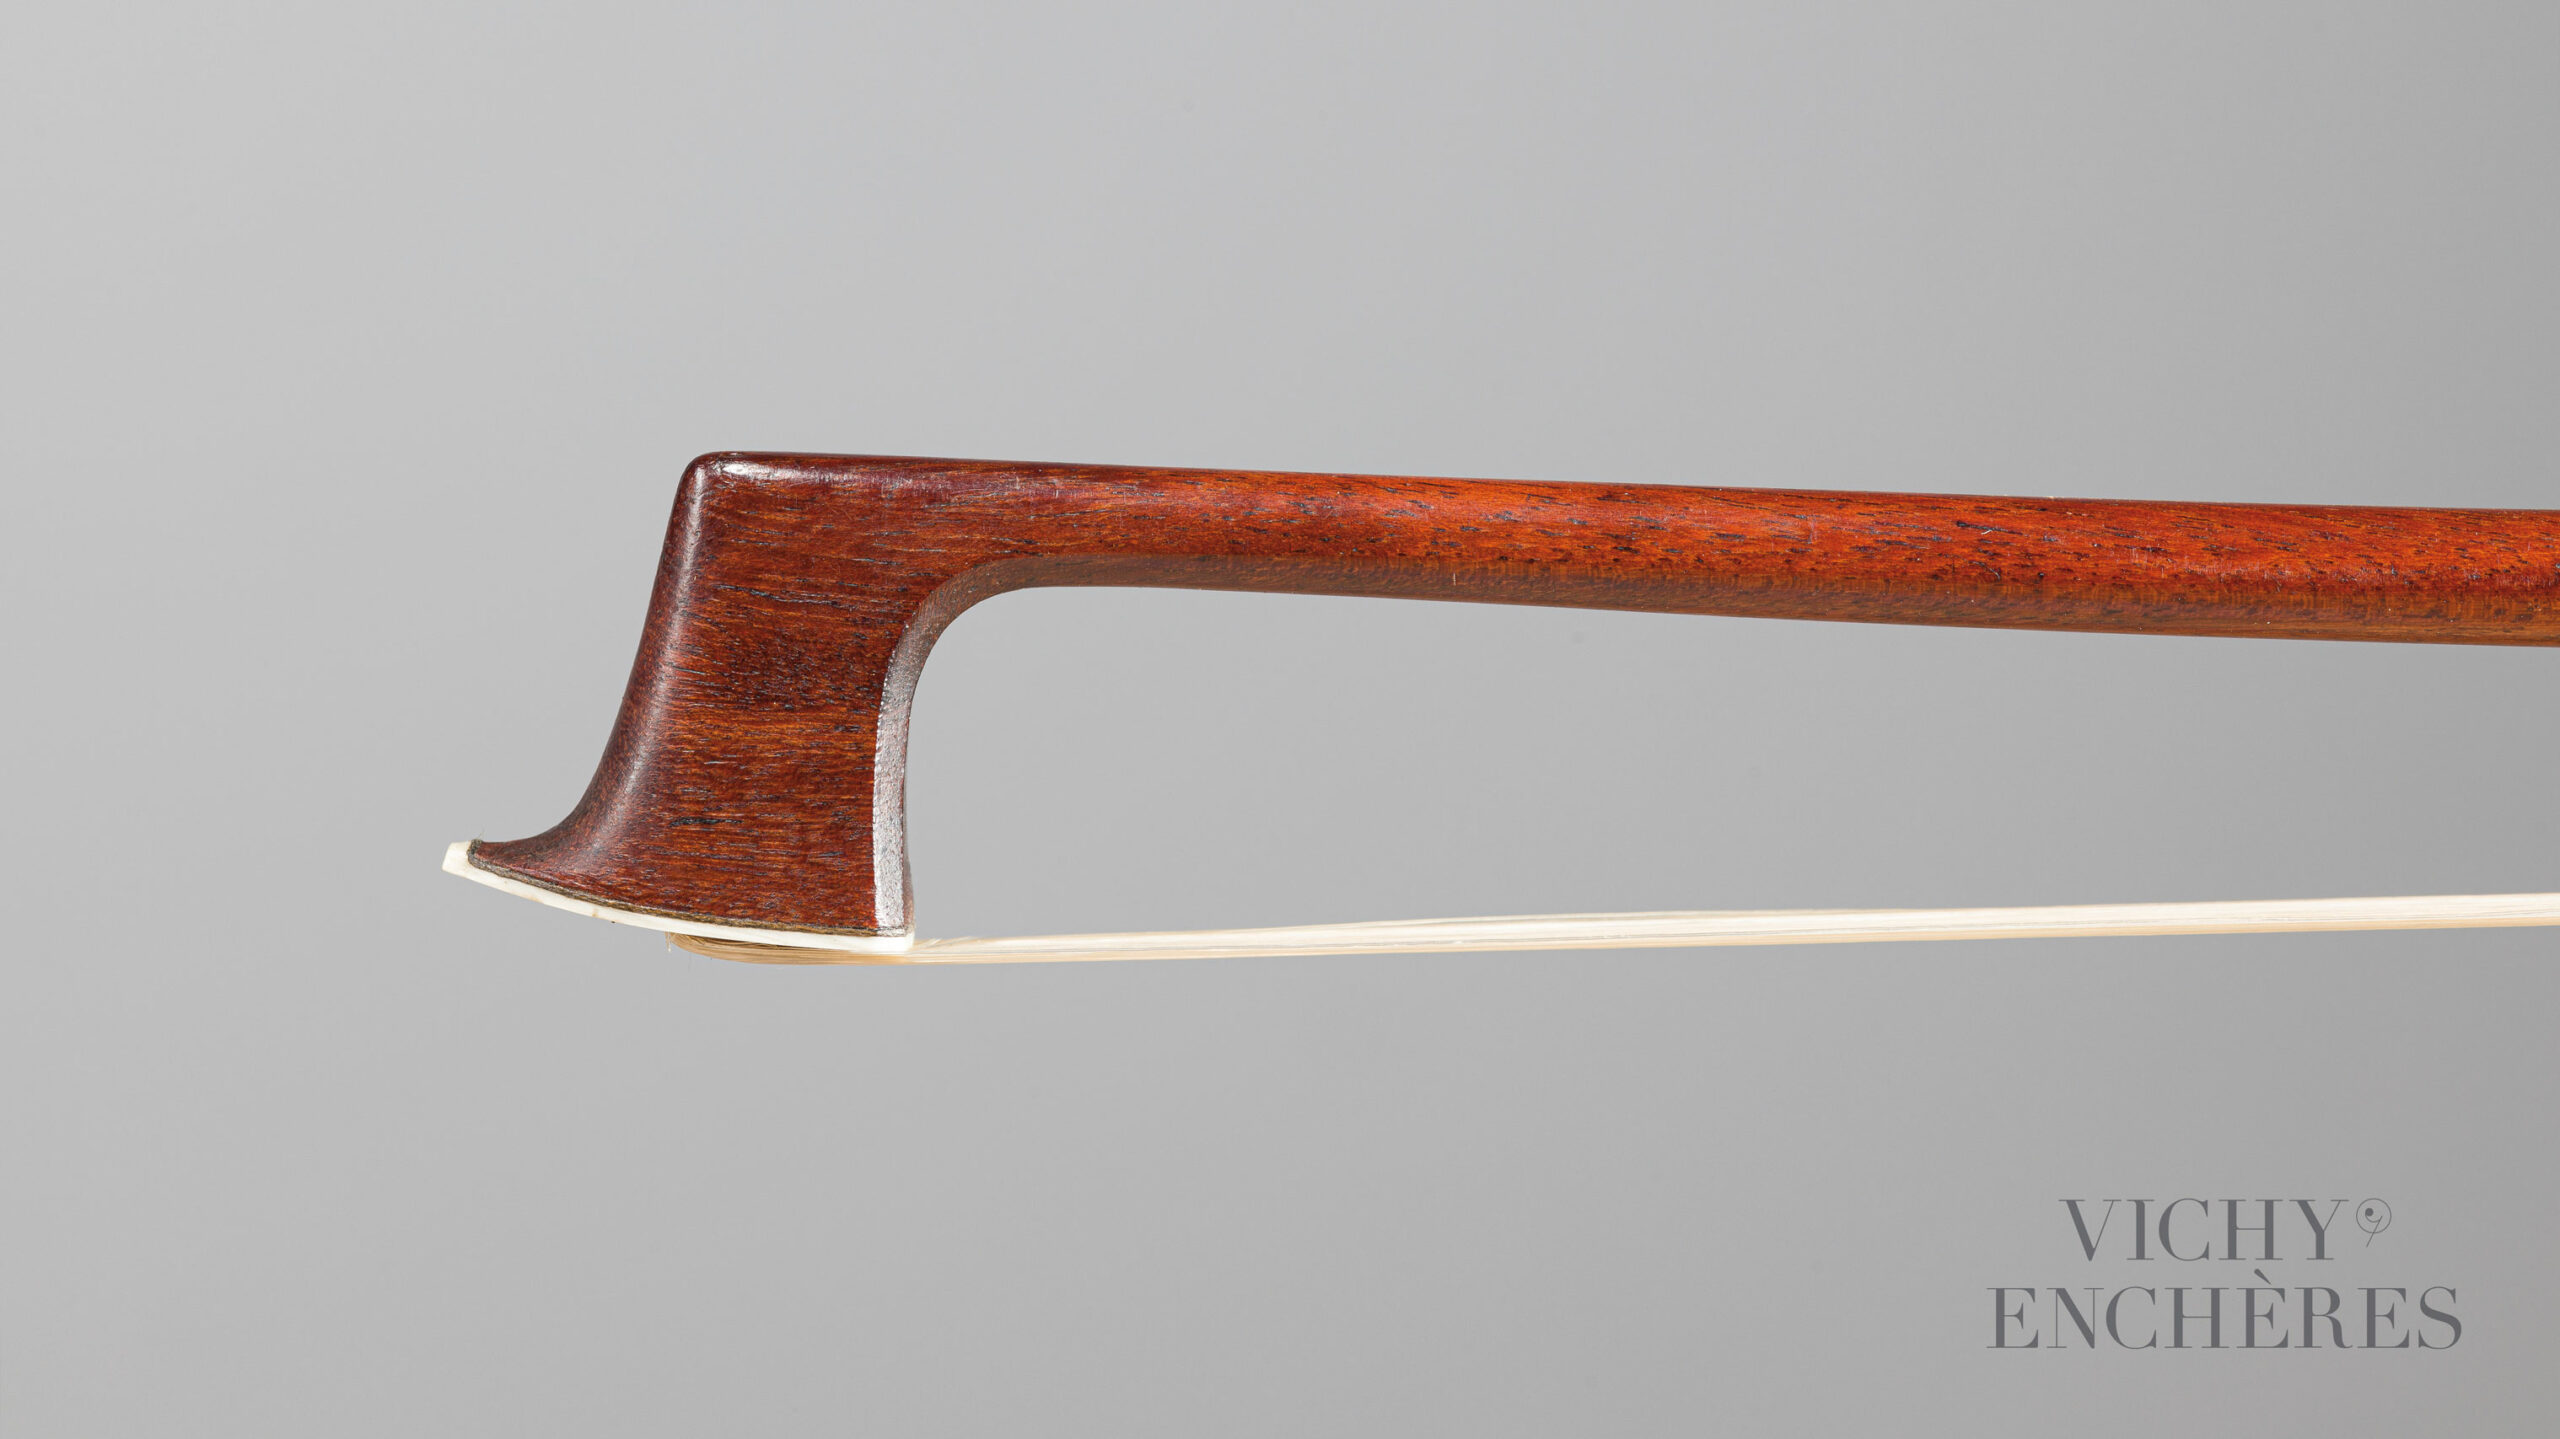 Archet de violon de Nicolas Rémy MAIRE Instrument mis en vente par Vichy Enchères le 1er décembre 2022 © Christophe Darbelet